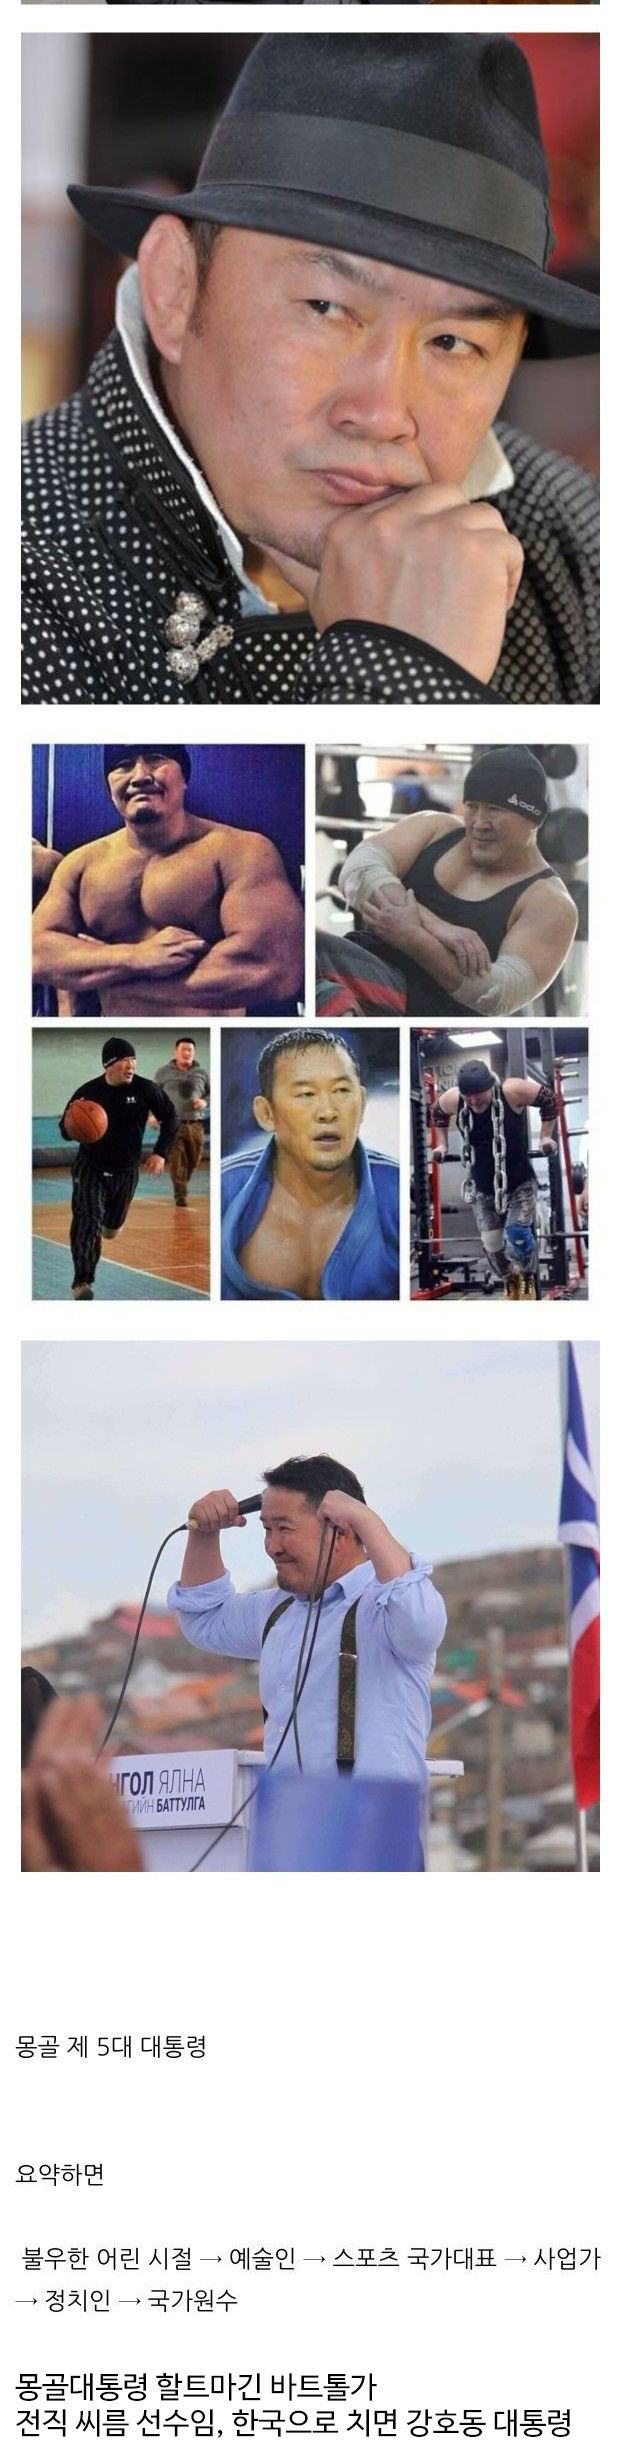 Mongolian president's physical.